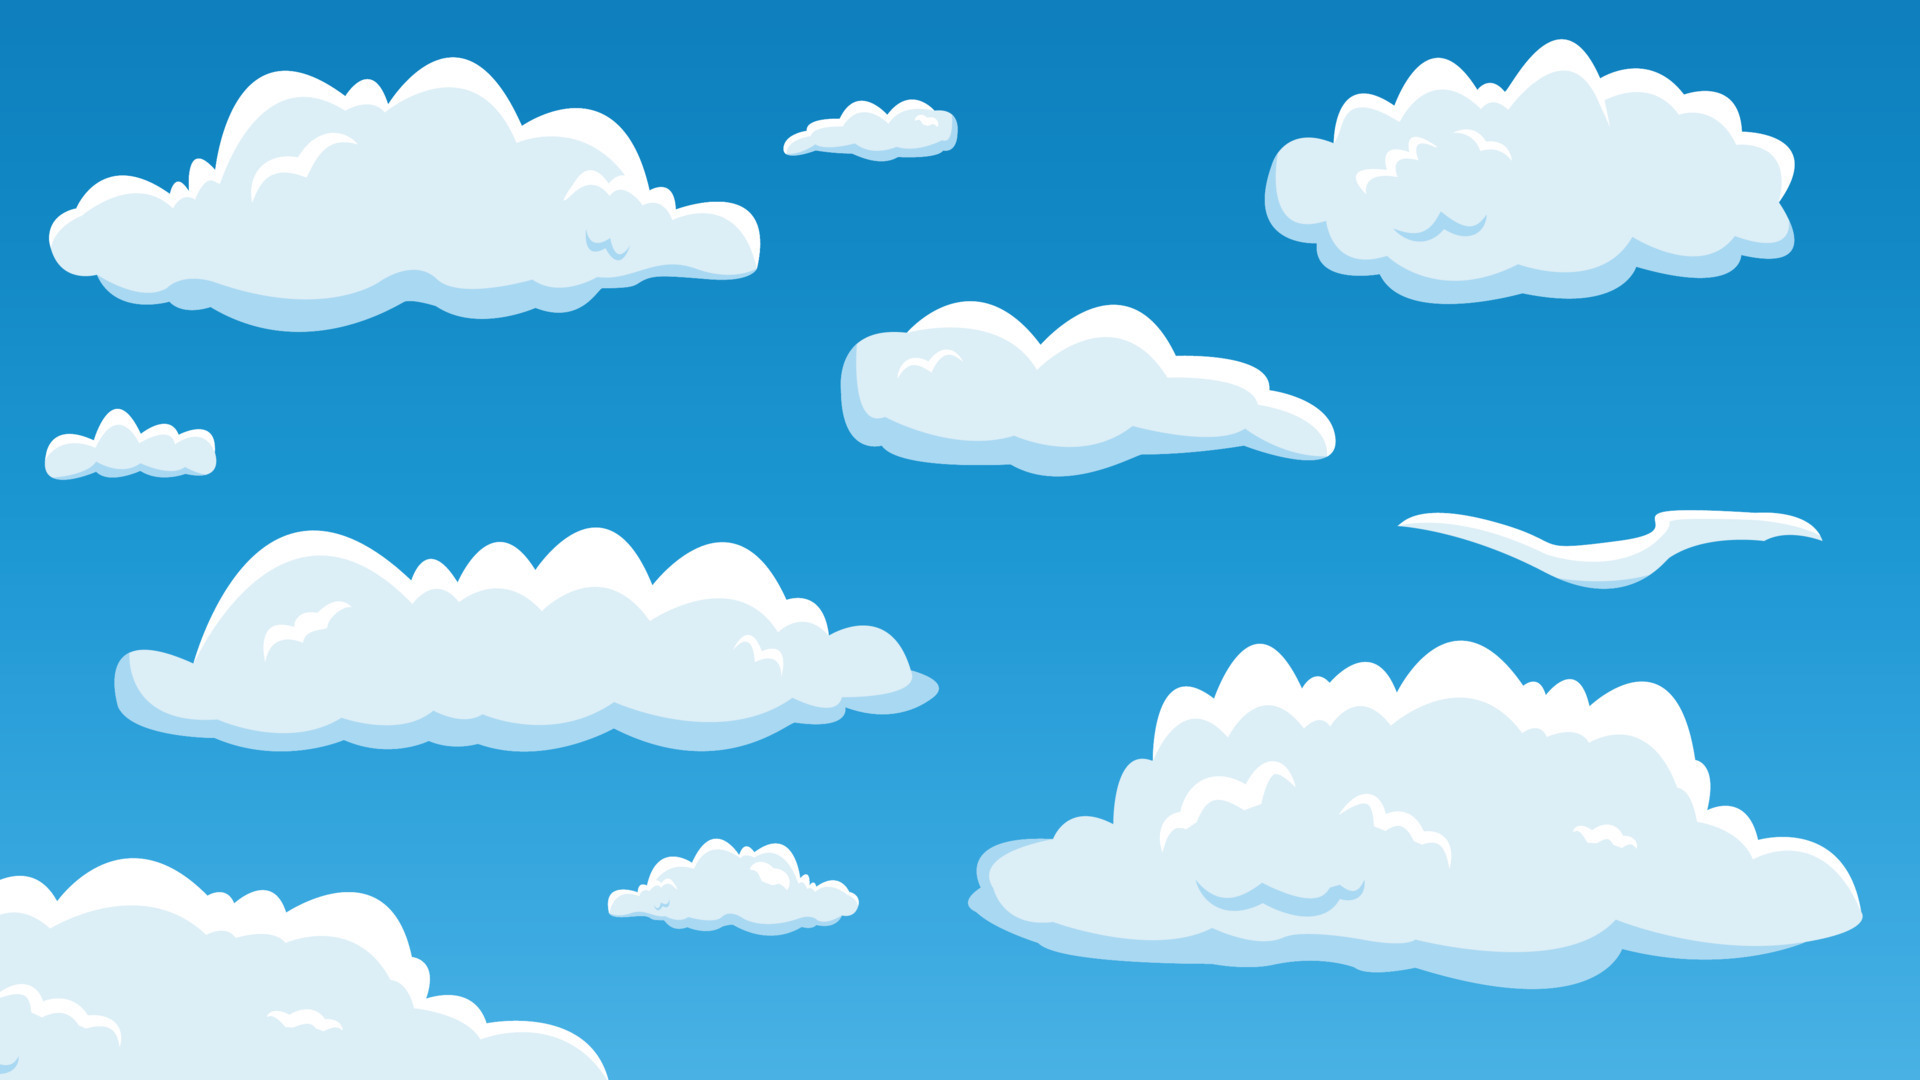 Đám mây ngẫu nhiên: Cùng theo dõi những đám mây ngẫu nhiên trôi qua trên bầu trời xanh, chúng sẽ mang lại cho bạn một cảm giác chiêm ngưỡng đầy thú vị và tuyệt vời.